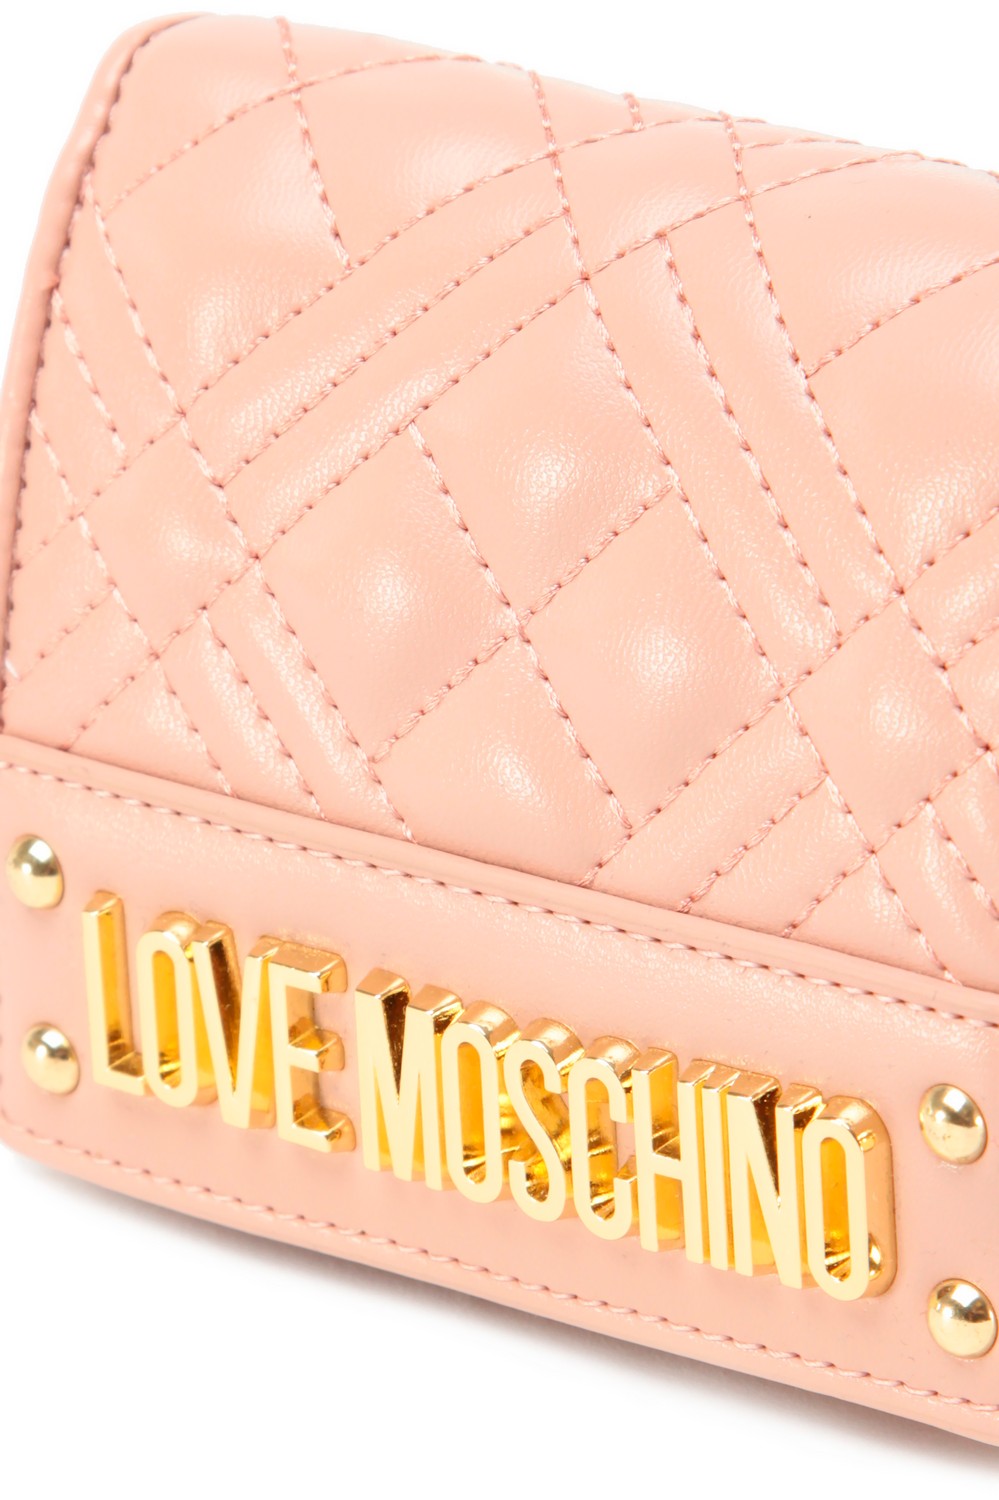 Love Moschino Стегнаный кошелек с логотипом